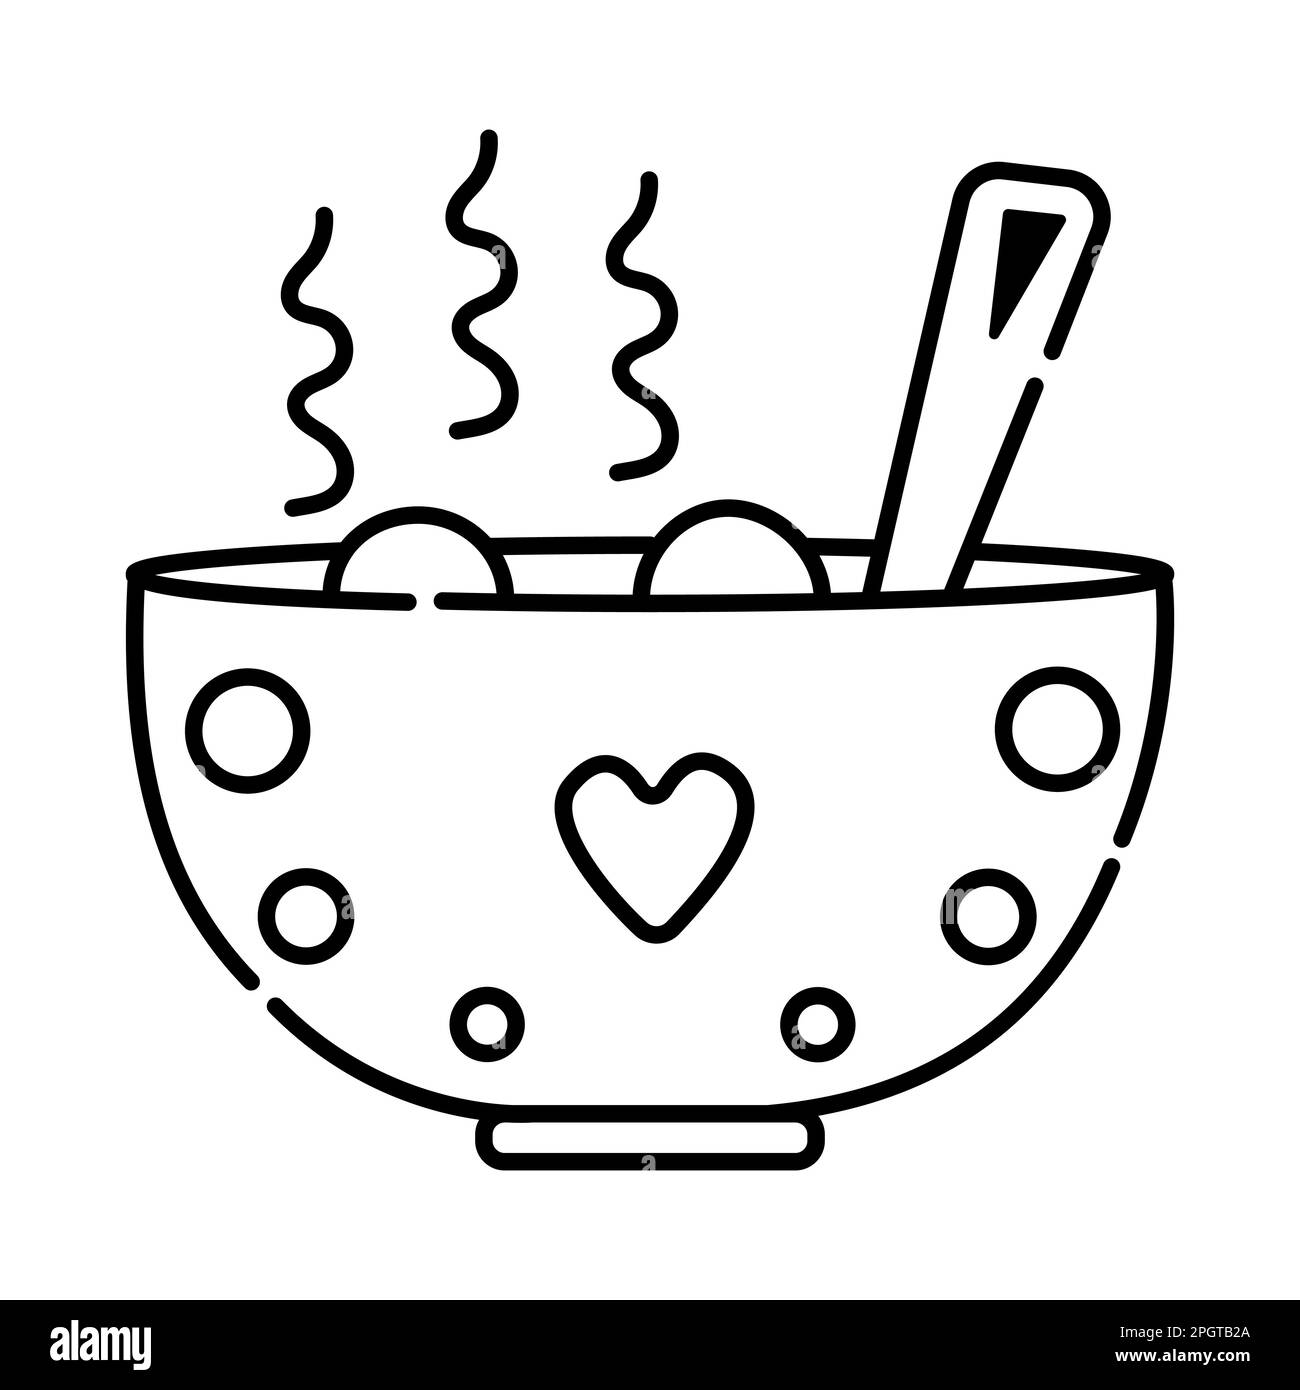 Repas chaud, icône de plat noir et blanc, illustration vectorielle d'une casserole avec des aliments faits maison Illustration de Vecteur